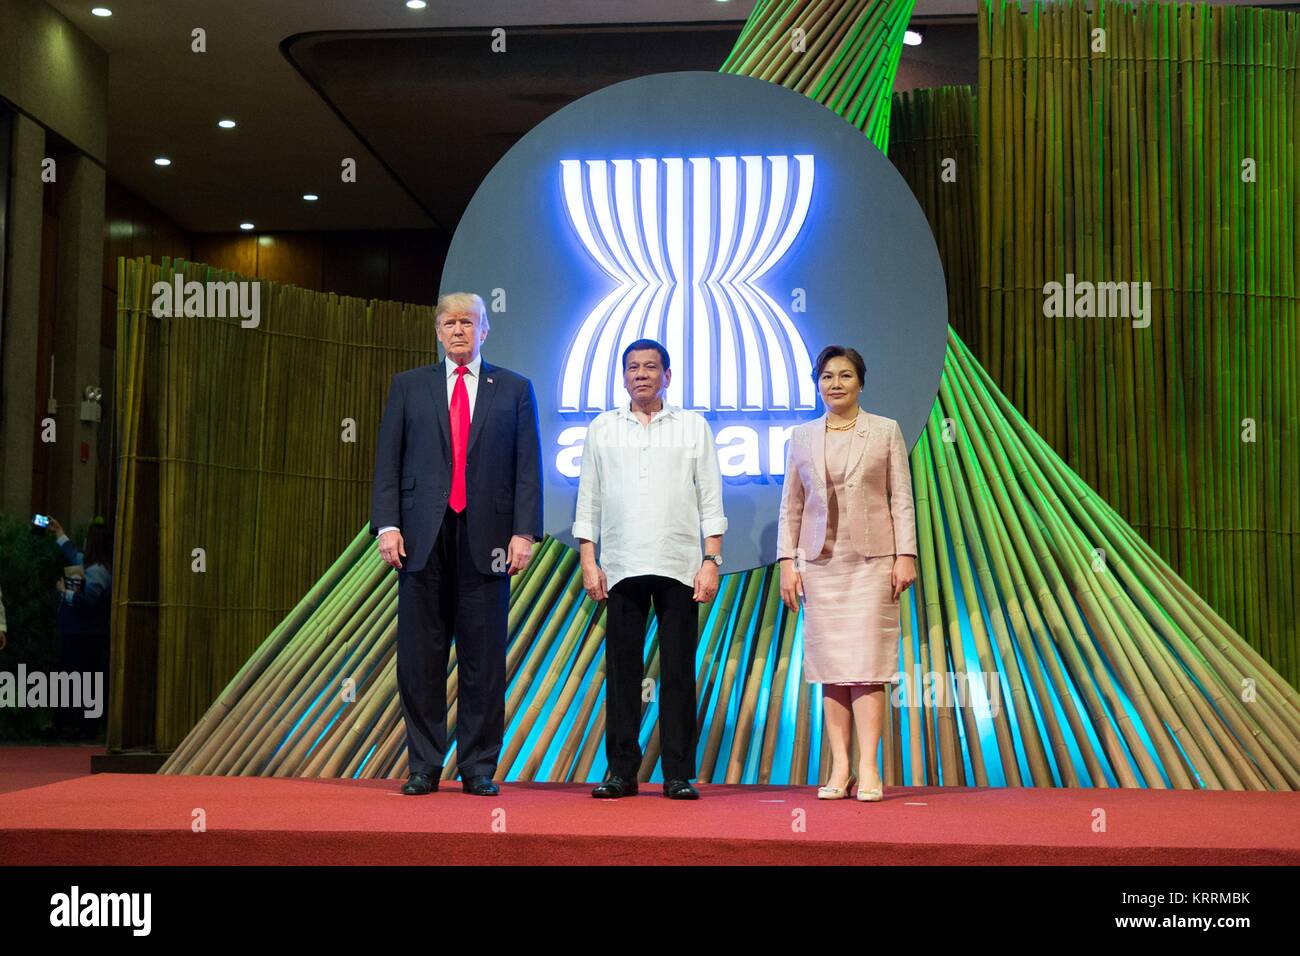 Le Président américain Donald Trump (à gauche), la présidente des Philippines, Rodrigo Duterte, et femme Avancena Honeylet posent au cours de la 31e Sommet de l'ASEAN au Centre culturel des Philippines le 13 novembre 2017 à Manille, aux Philippines. Banque D'Images